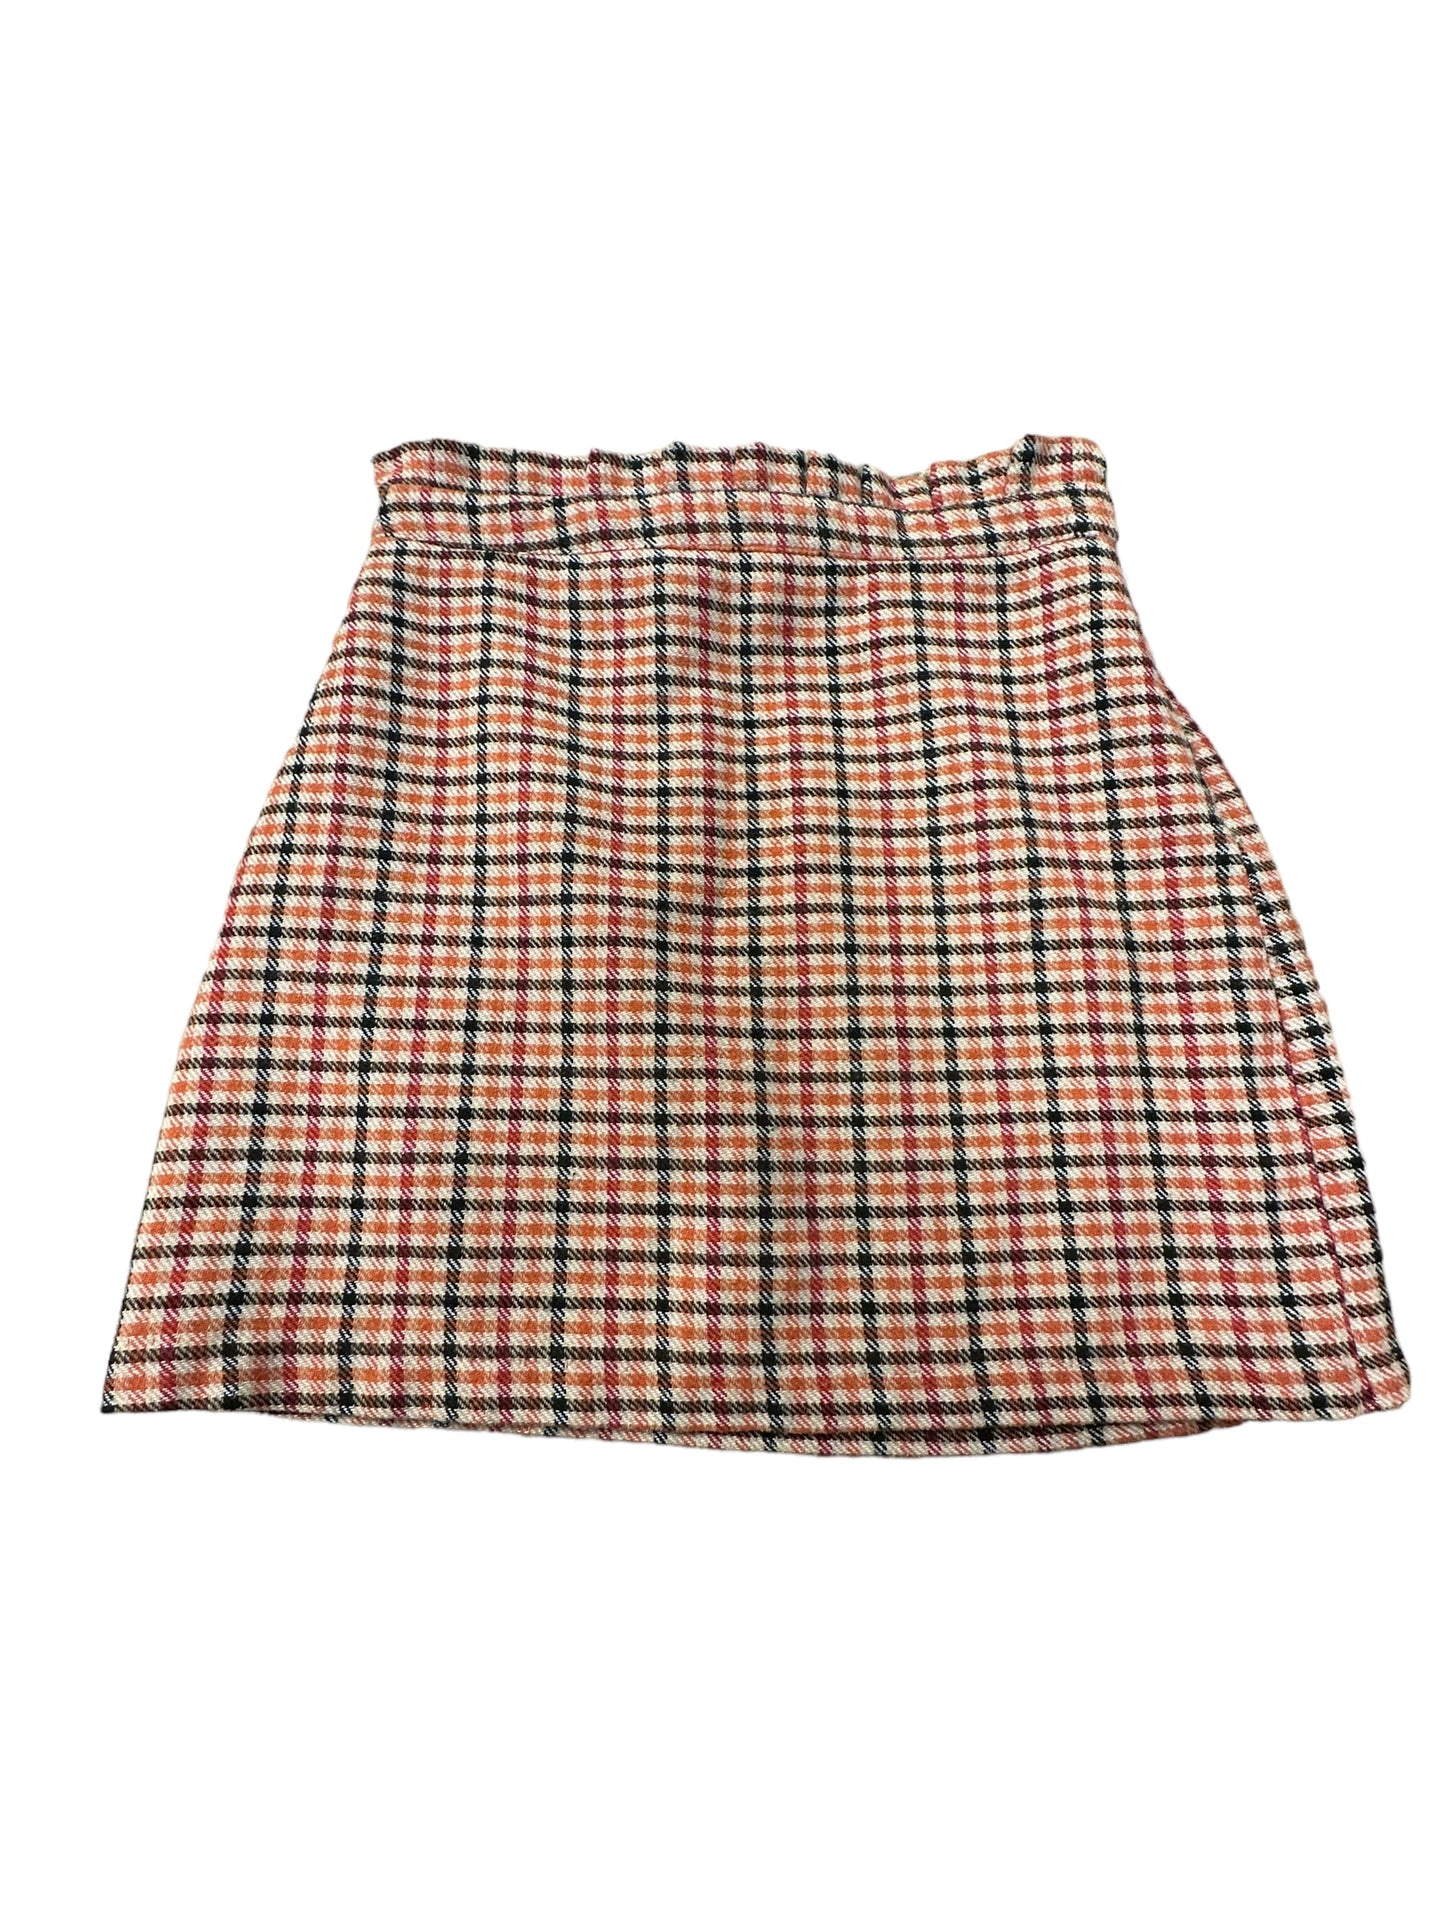 Skirt Mini & Short By Forever 21  Size: M